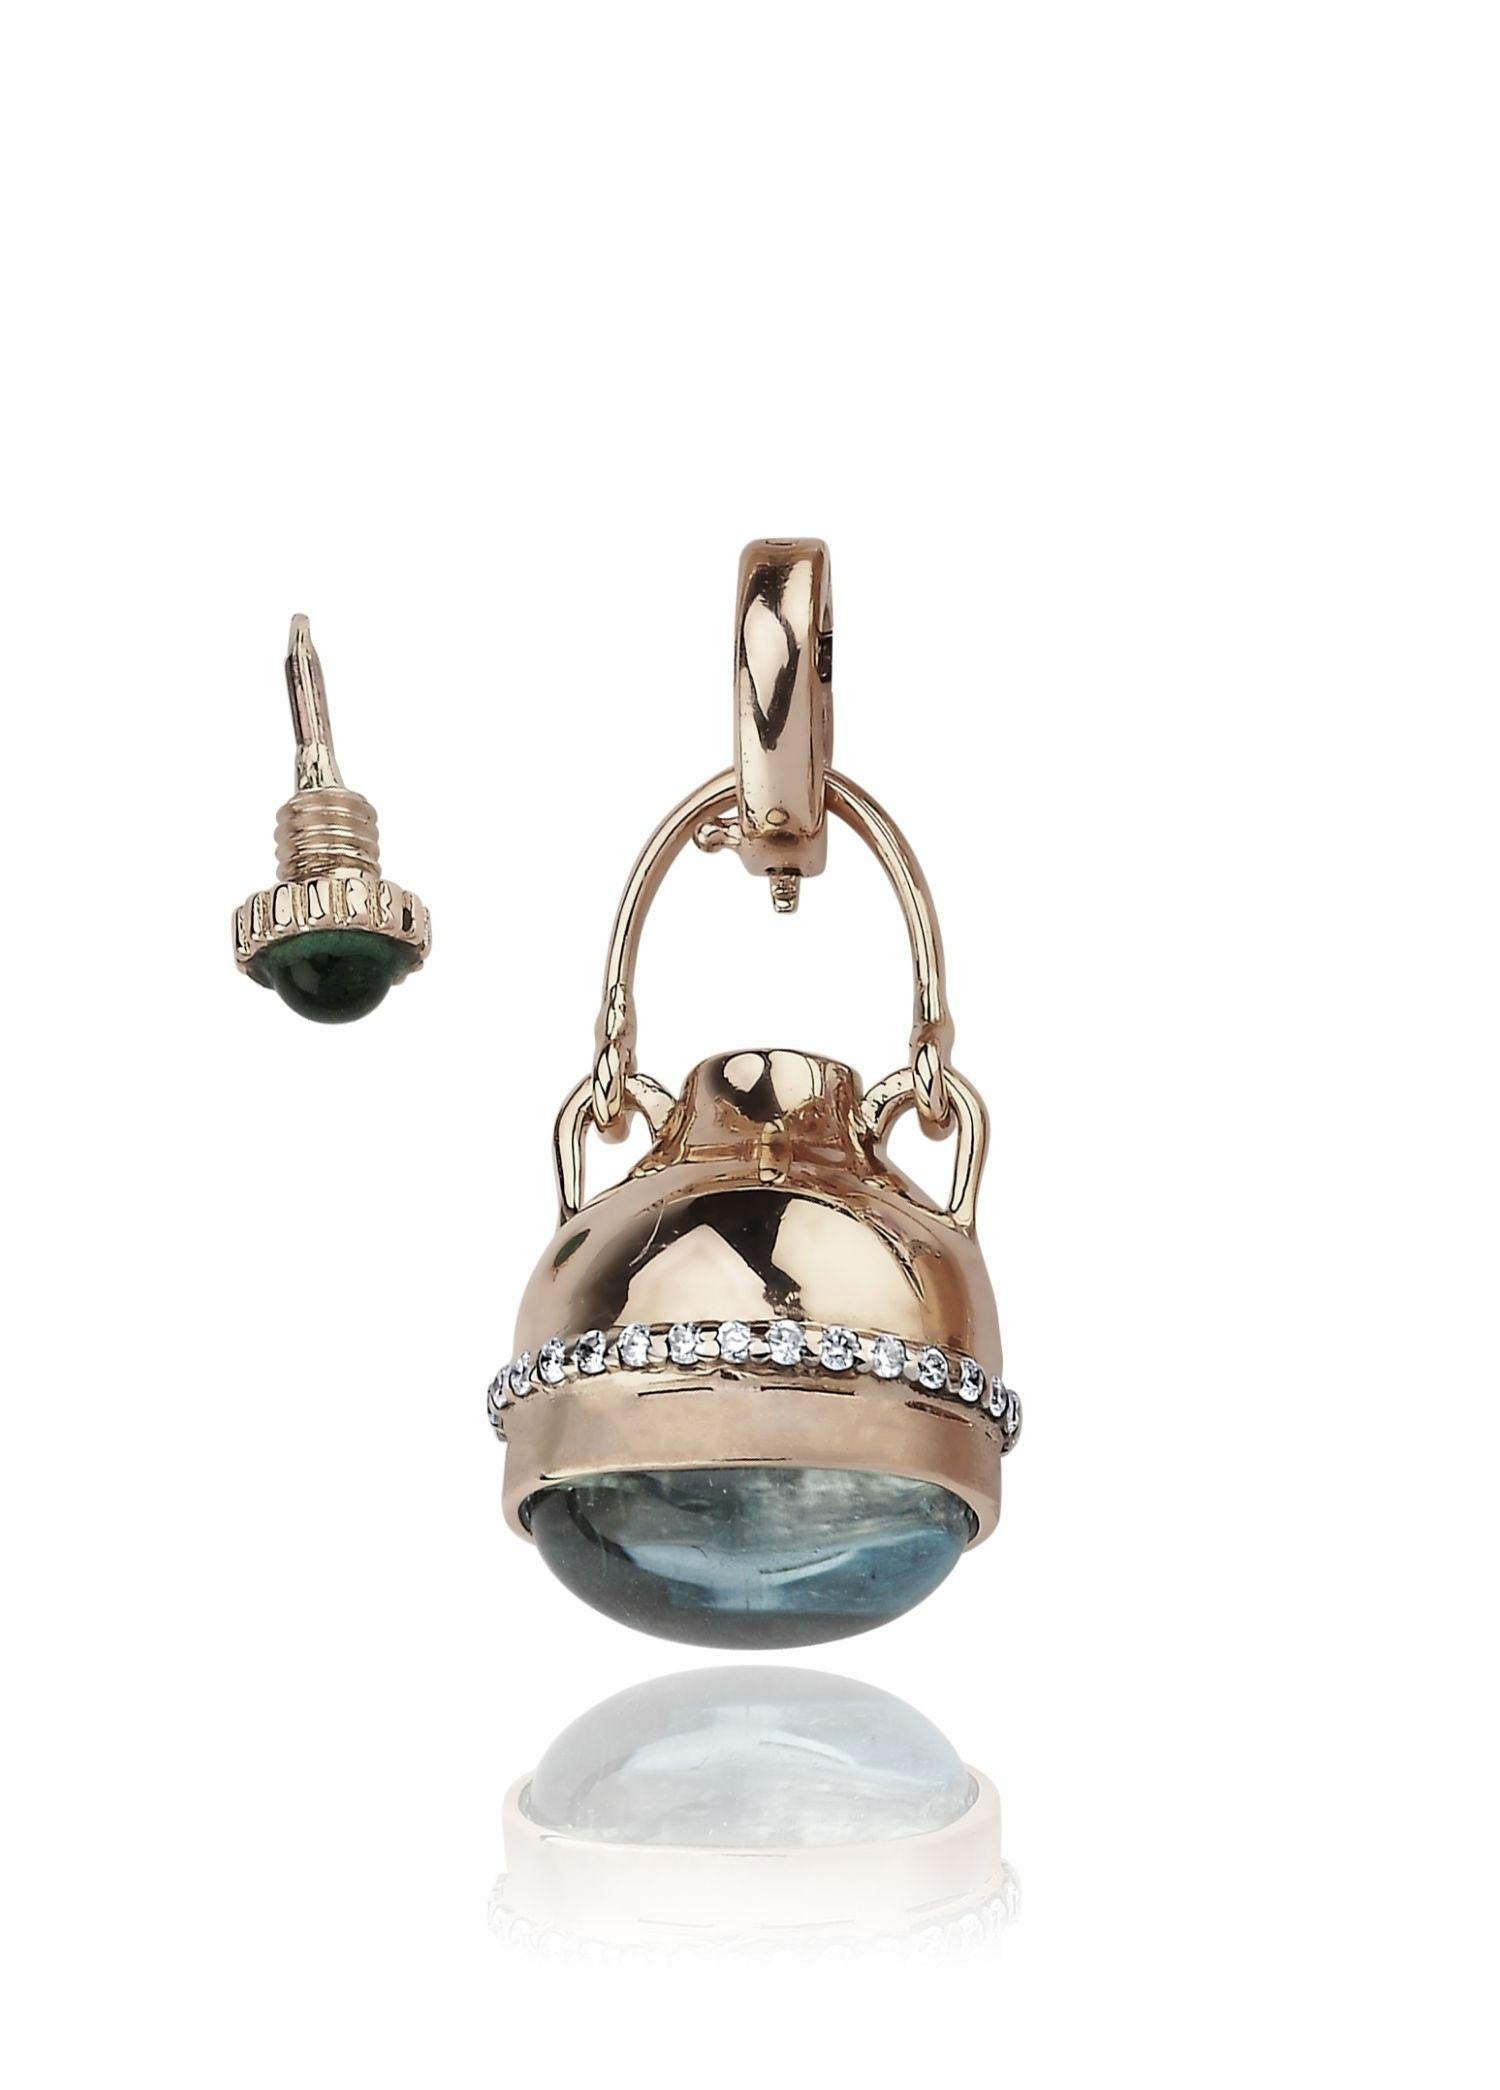 Bijoux Melie Pendentif bouteille de parfum

Or rose 14 carats, 0,11 ct diamant/G-VS, 0,24 ct tourmaline, 3,52 ct topaze bleue

L'histoire derrière
Au XVIe siècle, les bijoux 